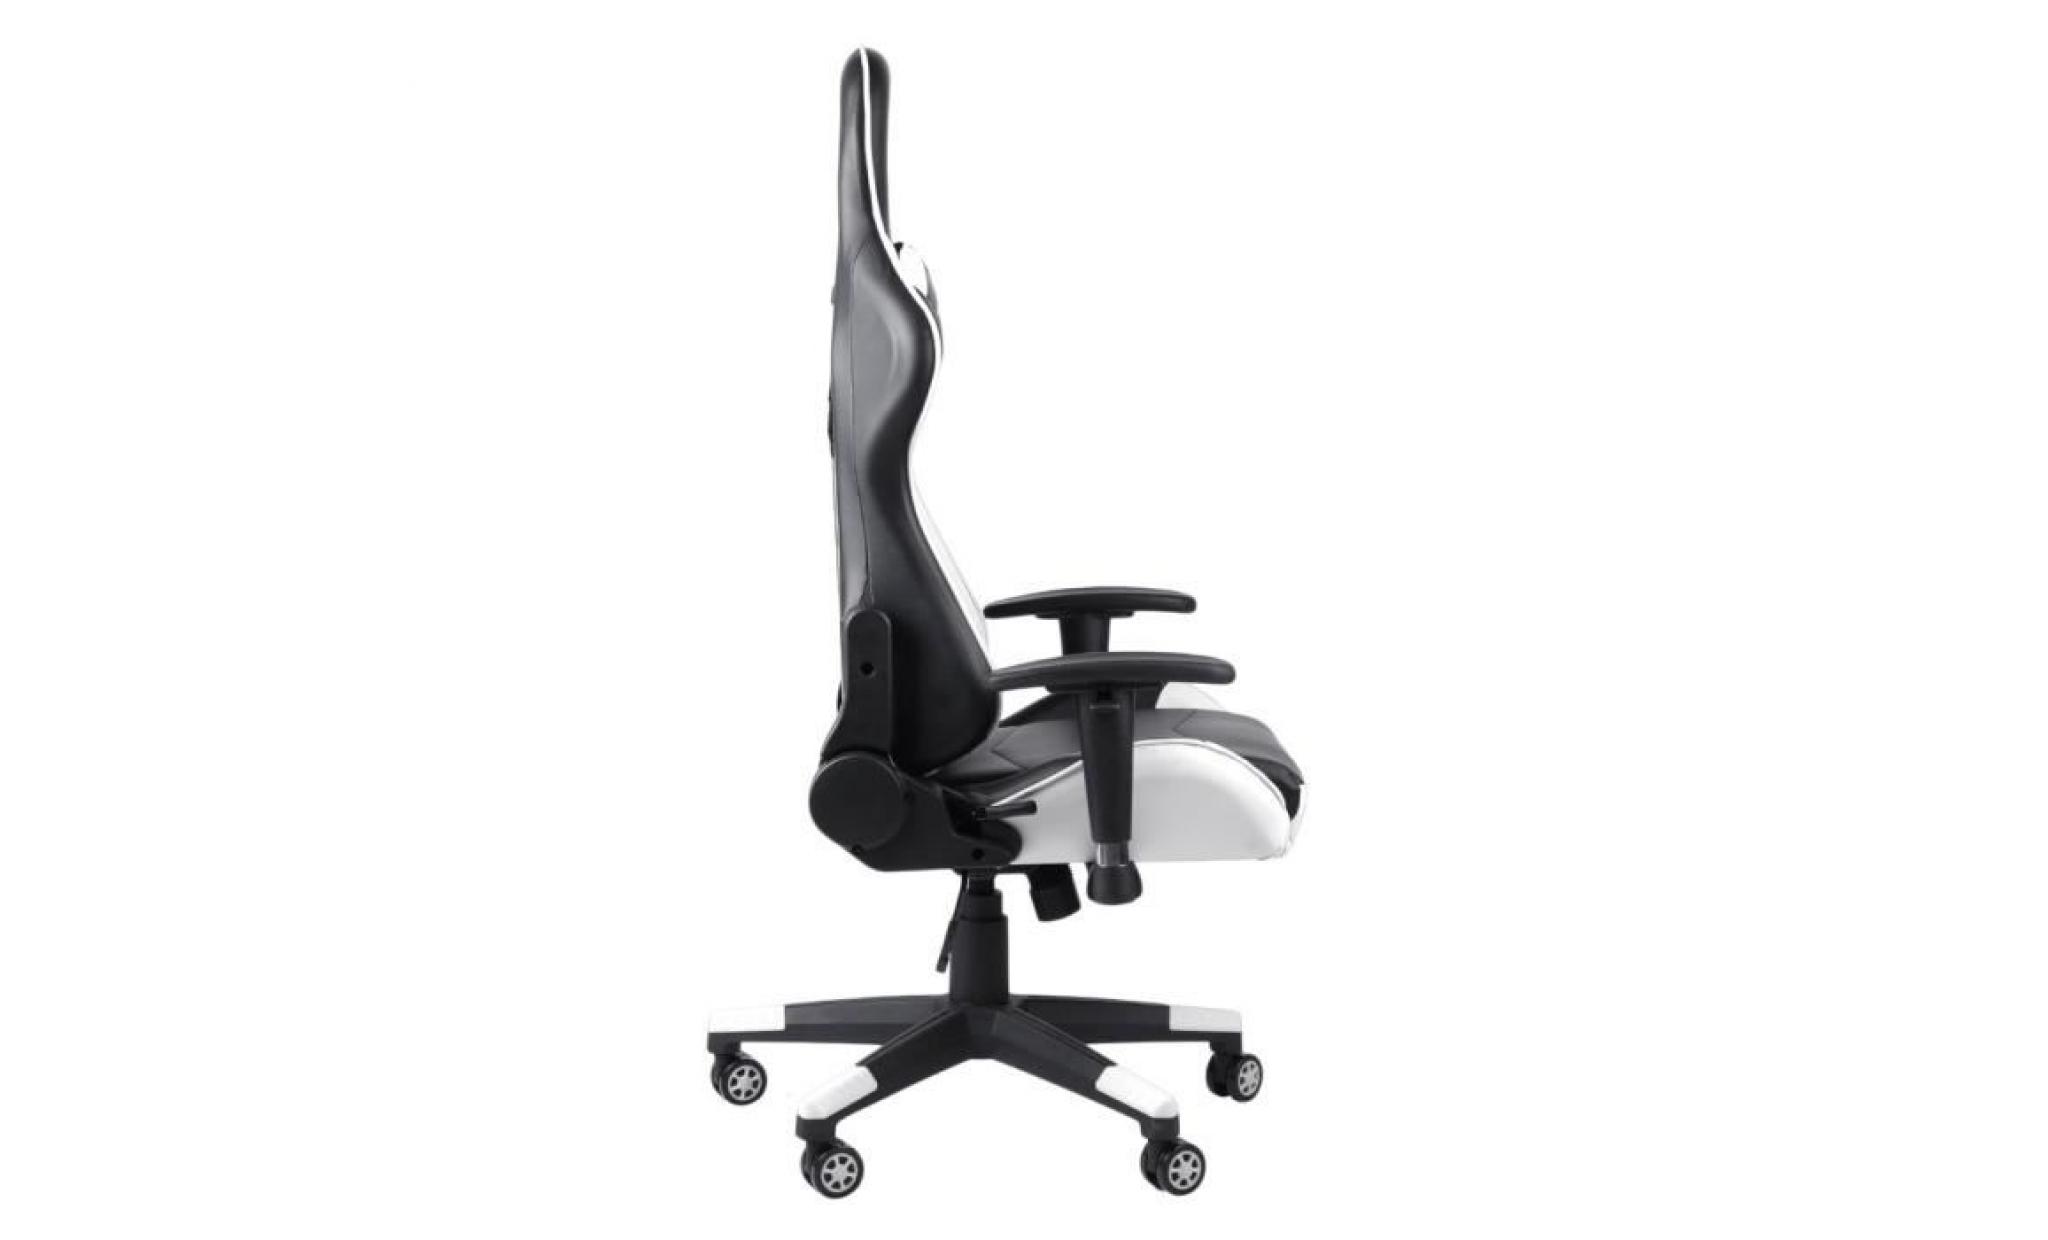 leshp chaise de bureau fauteuil de bureau gaming design baquet   style contemporain   orange pas cher